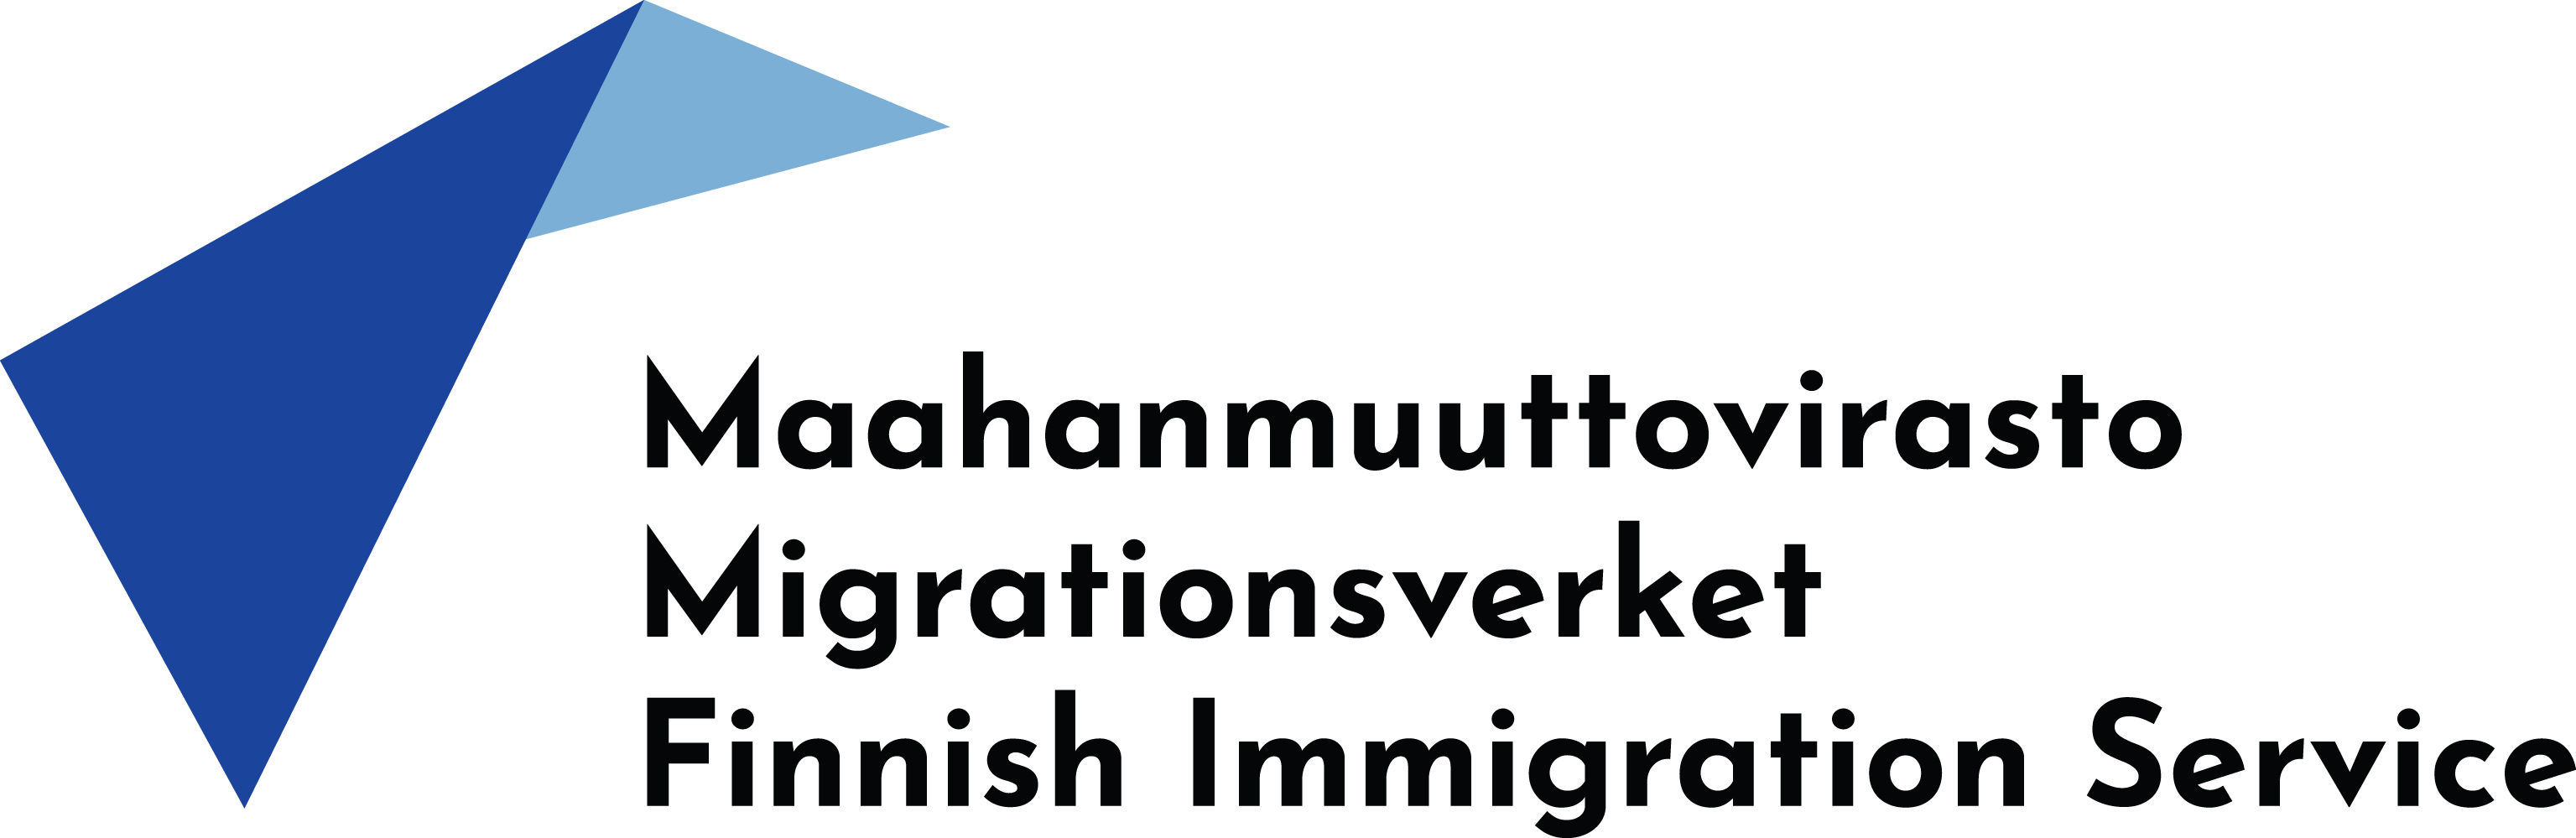 Maahanmuuttoviraston logo